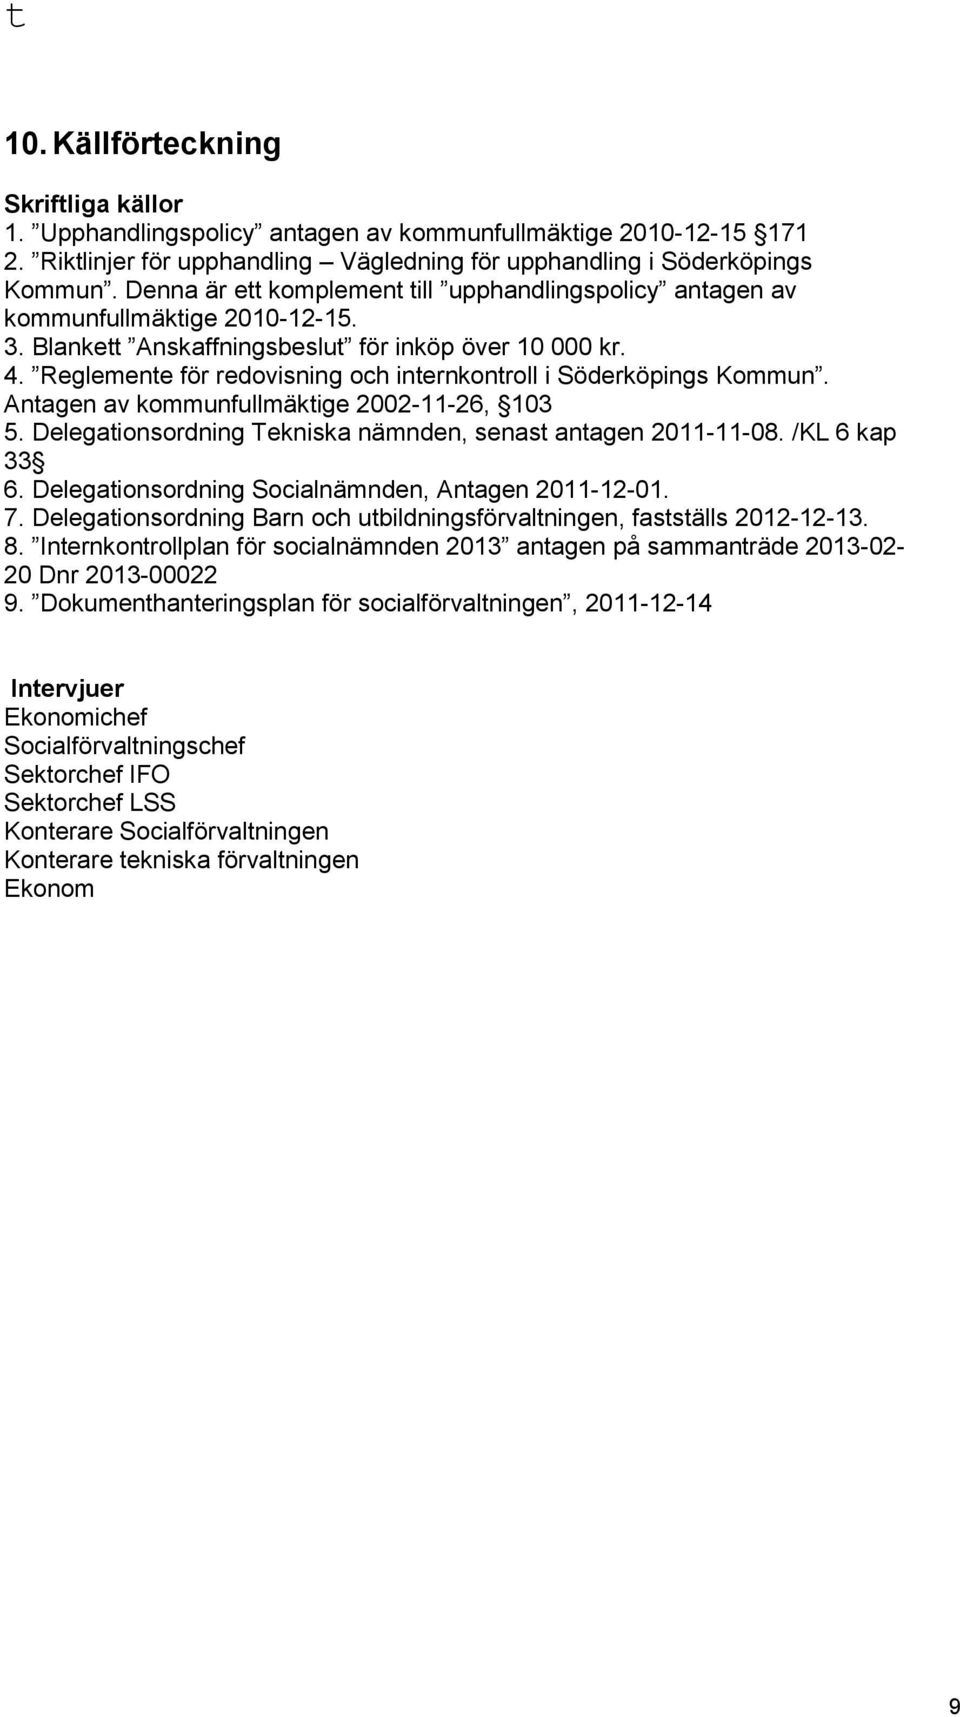 Reglemente för redovisning och internkontroll i Söderköpings Kommun. Antagen av kommunfullmäktige 2002-11-26, 103 5. Delegationsordning Tekniska nämnden, senast antagen 2011-11-08. /KL 6 kap 33 6.